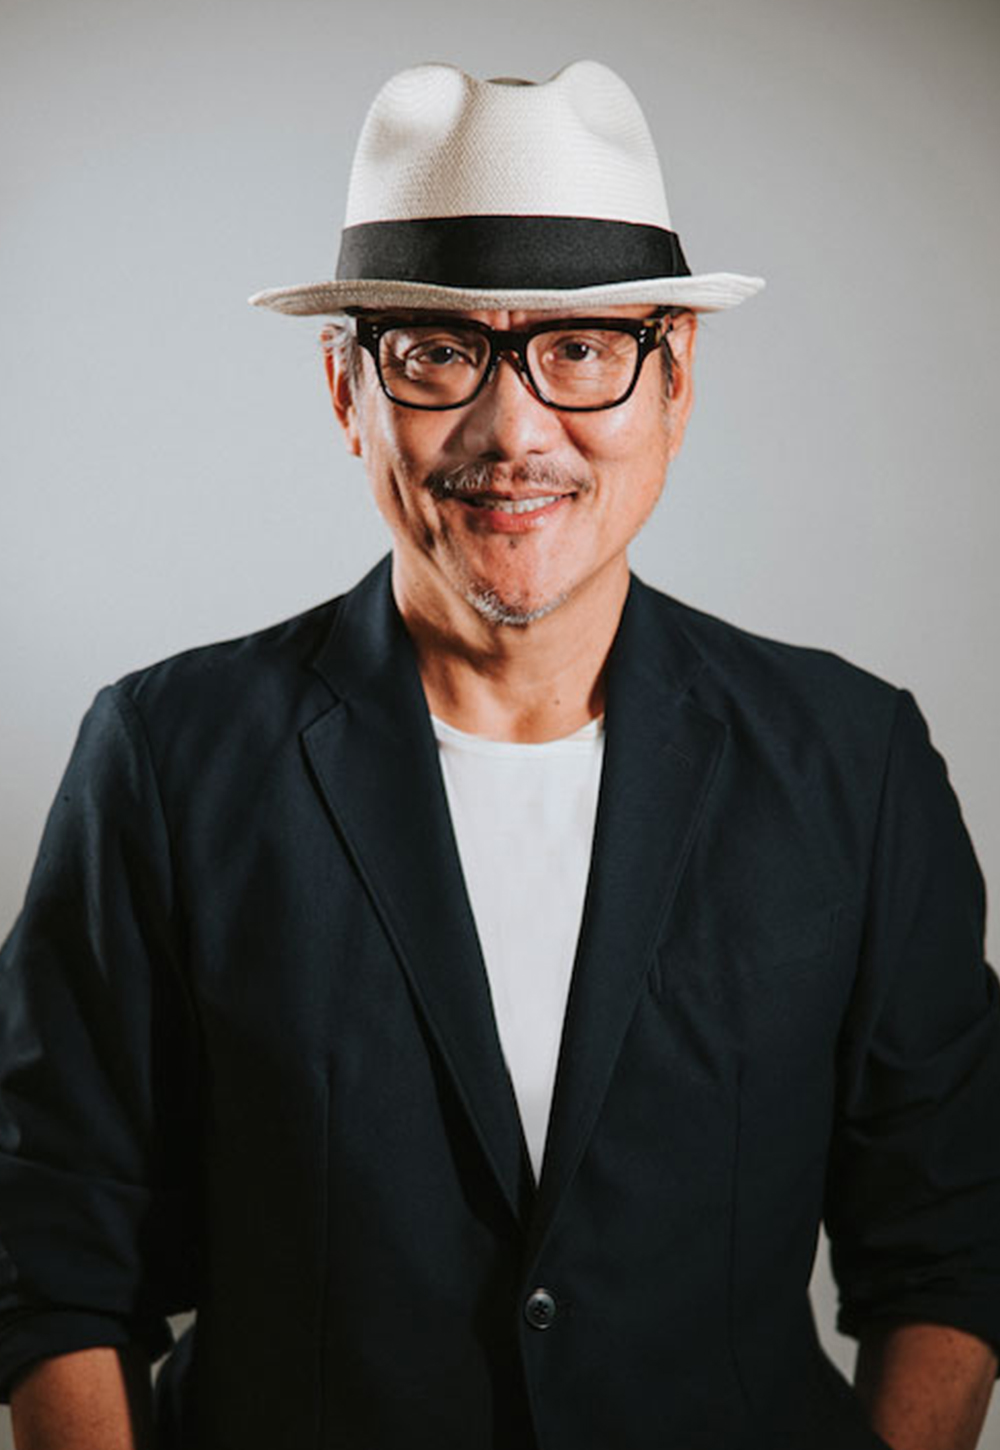 Iron Chef Masaharu Morimoto